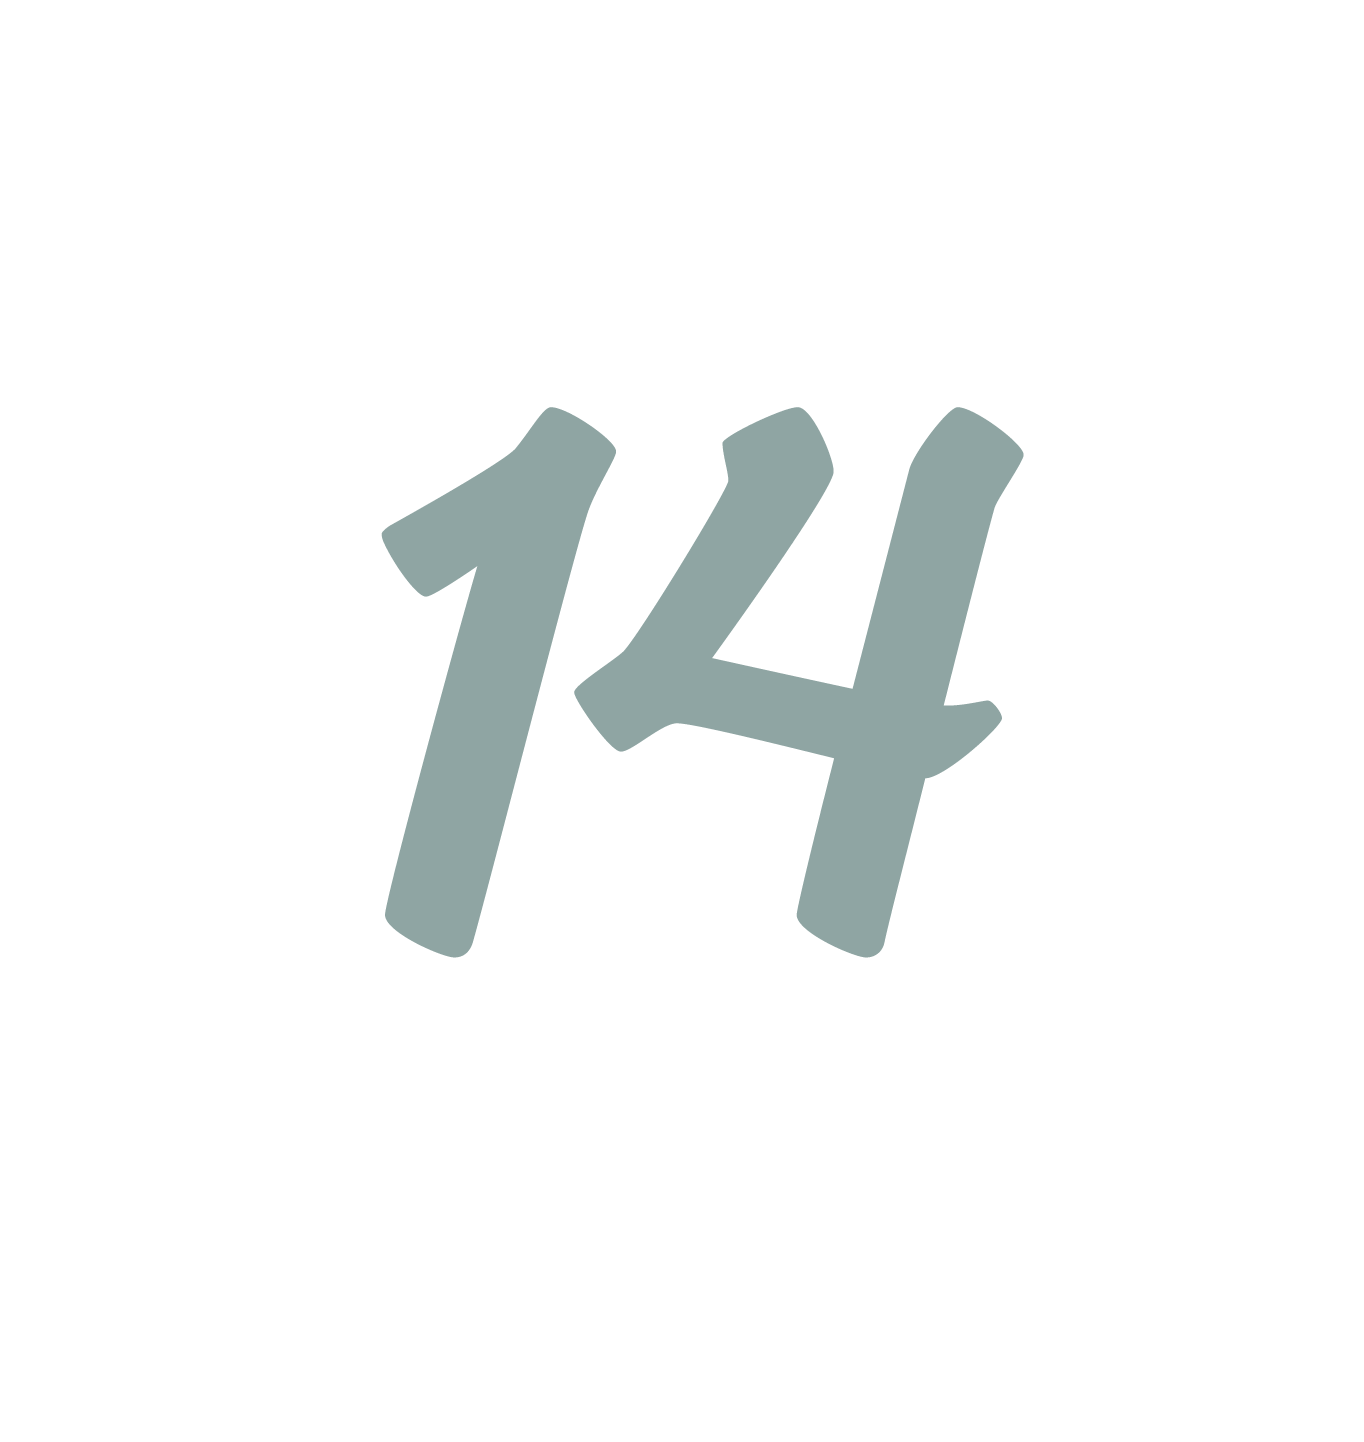 Die Zahl "14" in grau, The number "14" in grey